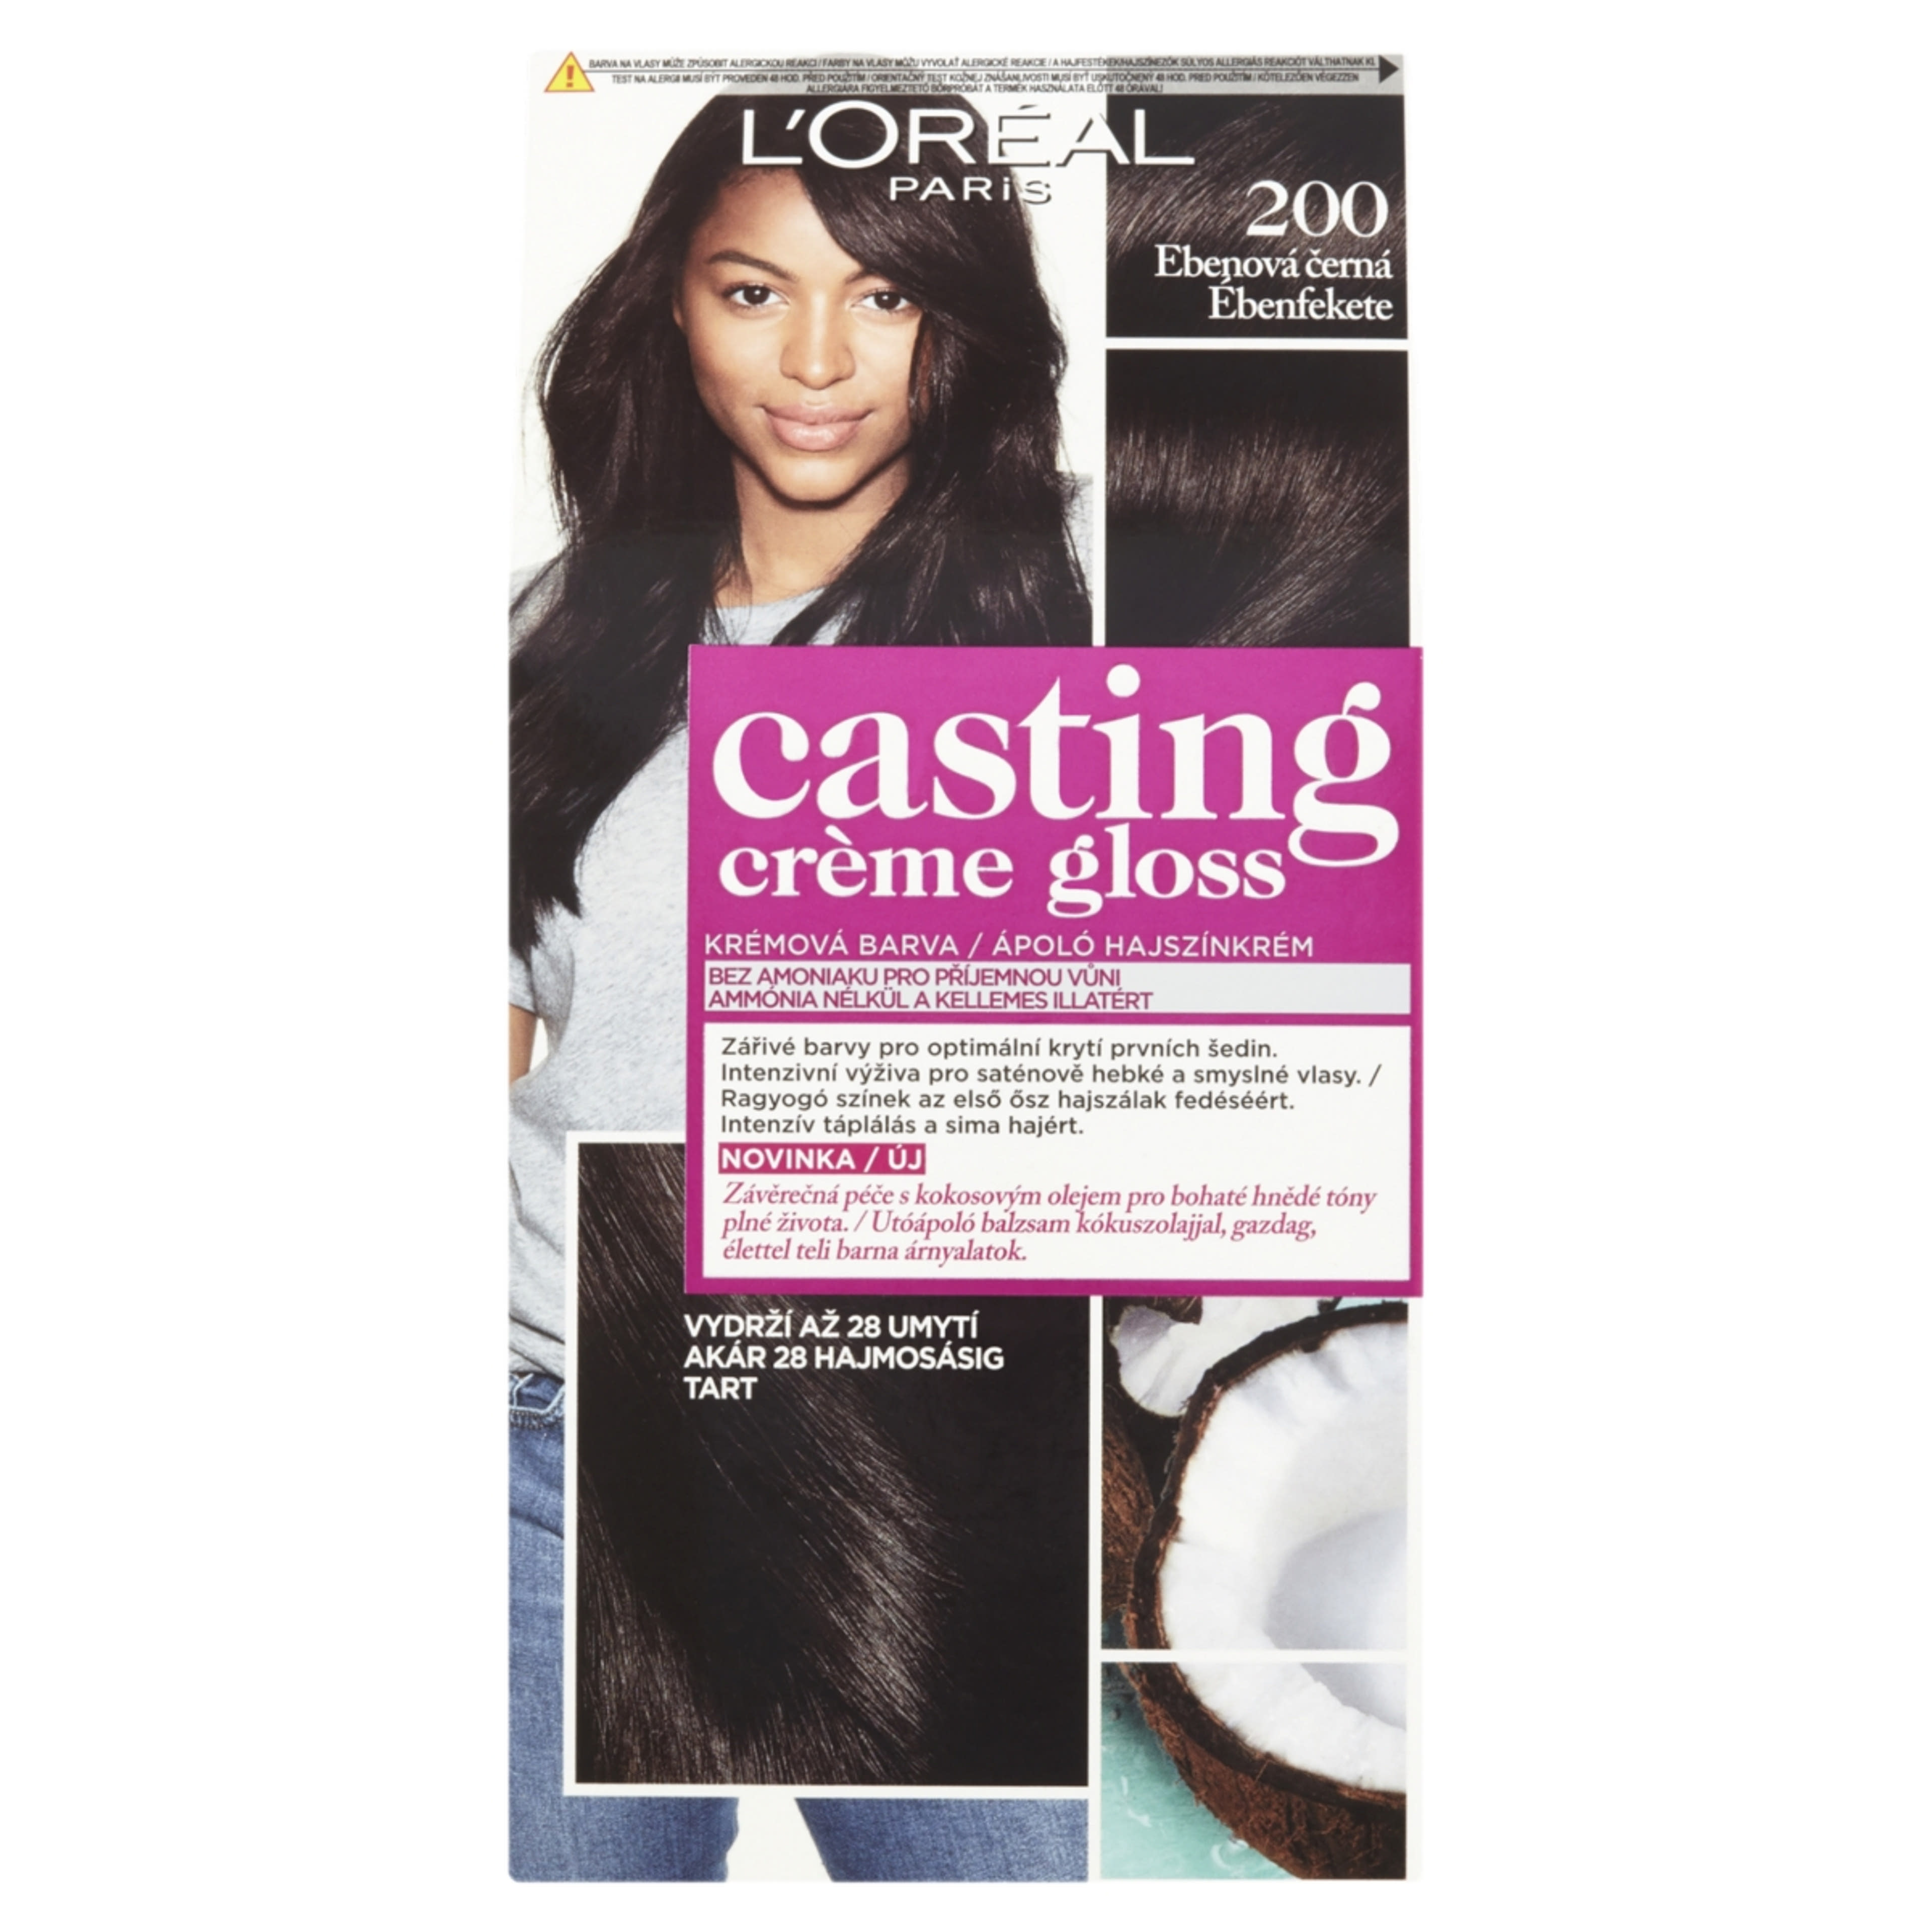 L'Oréal Paris Casting Creme Gloss Hajszínező krém 200 Ébenfekete - 1 db